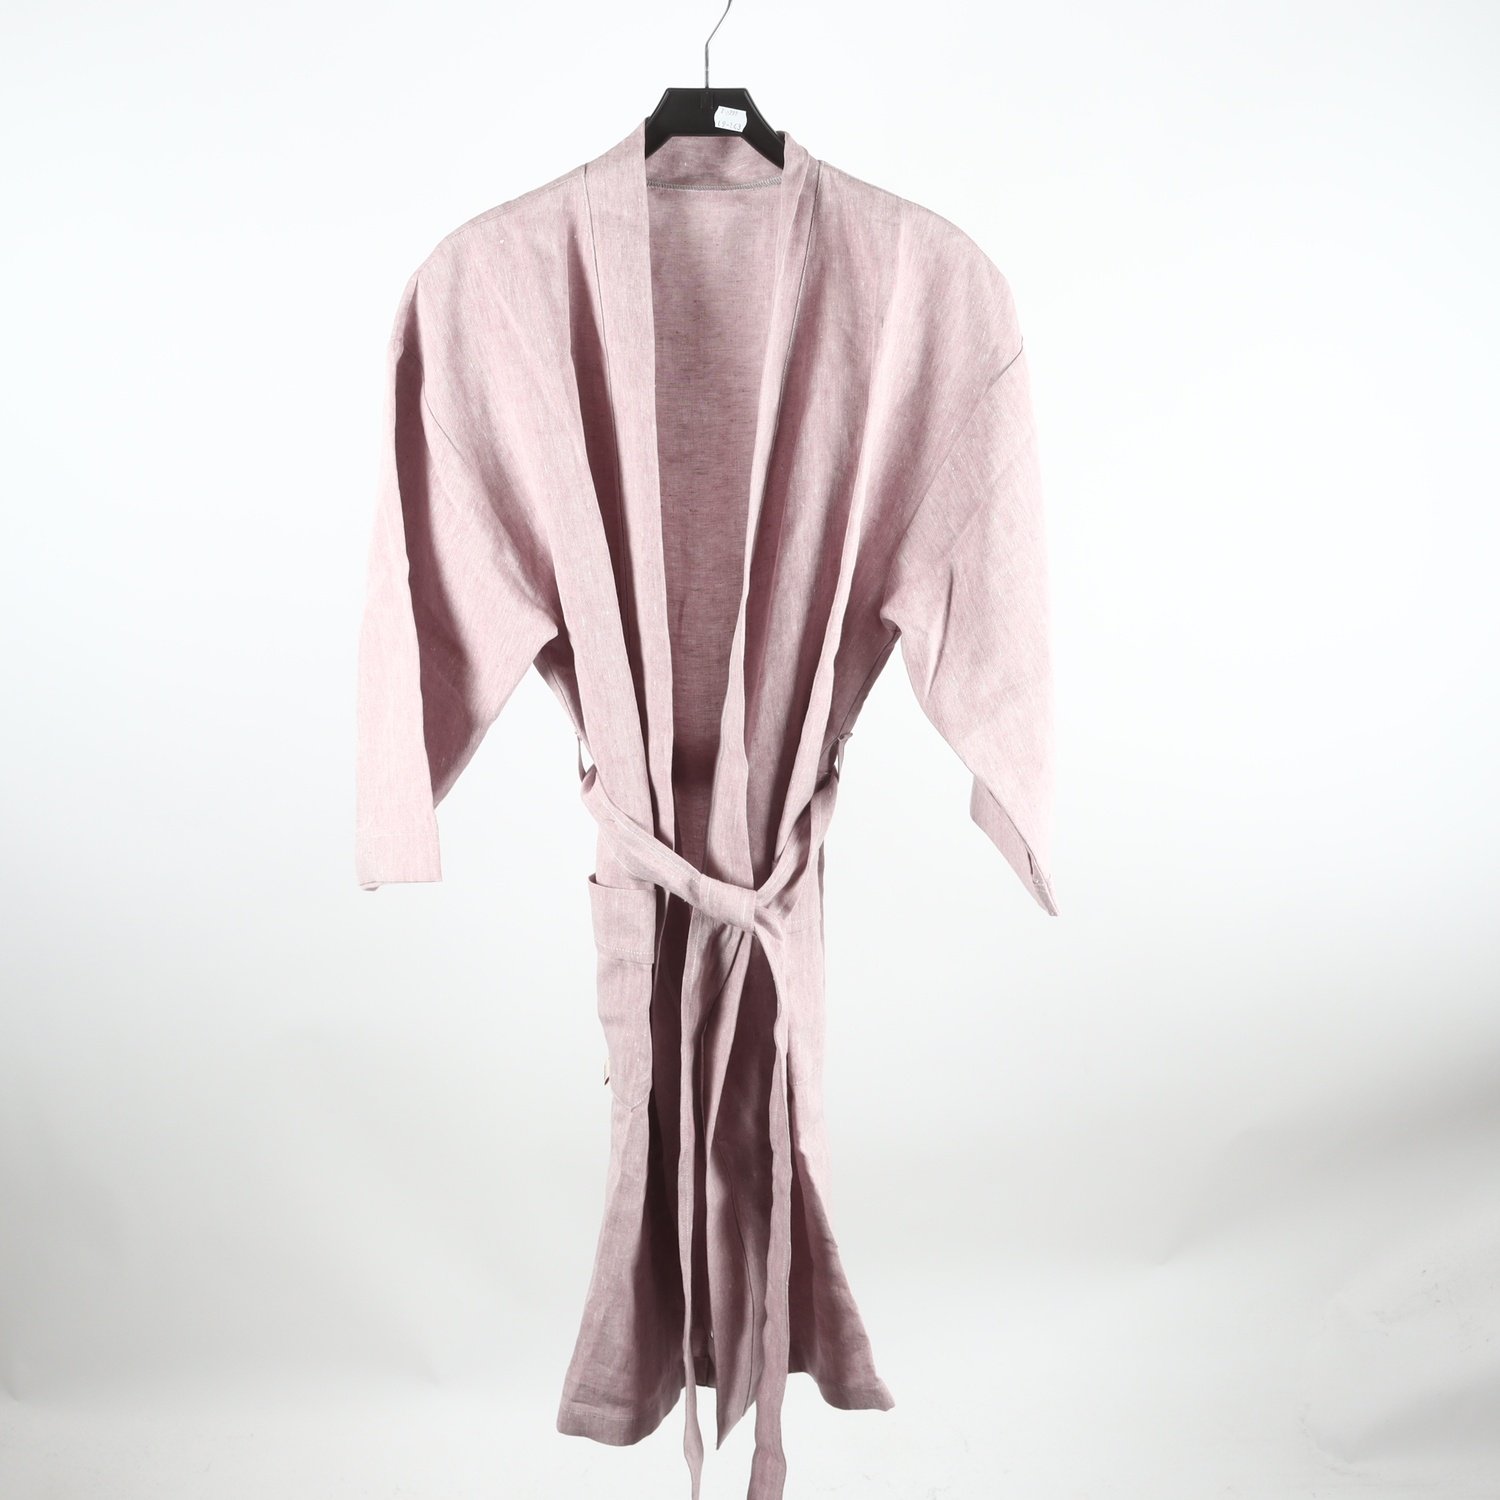 Kimono, Vävaren i Båstad, 100% lin, stl. M